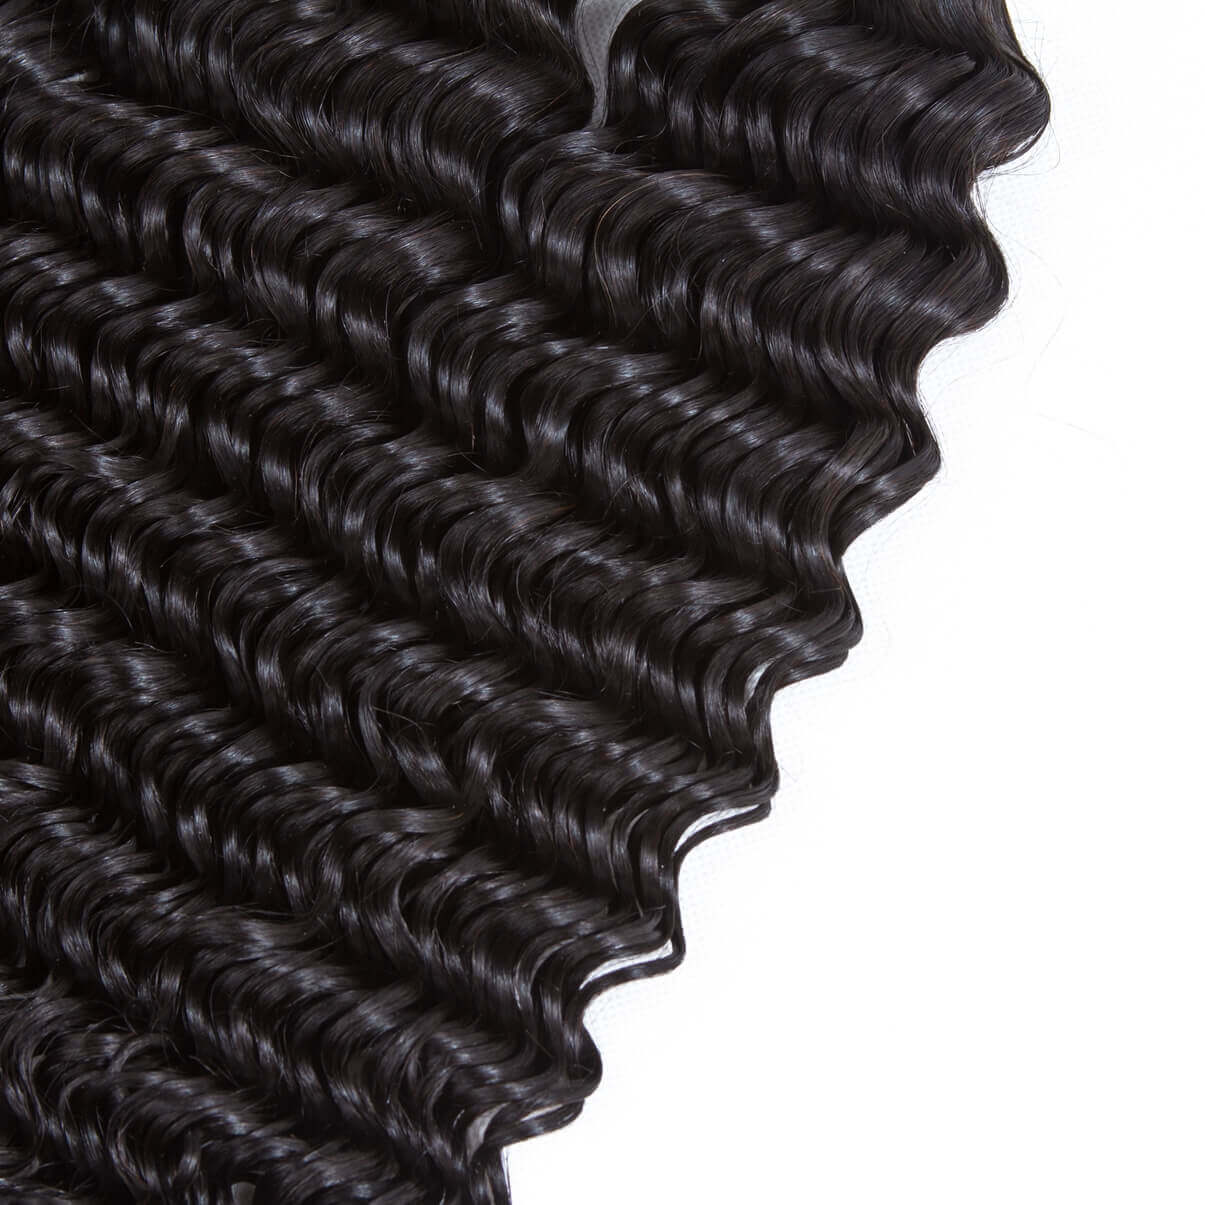 Lakihair 8A Brazilian Deep Wave Real Virgin Human Hair Bundles 3 Bundles Deals 100% Unprocessed Human Hair Weaving Soft Full Bundles